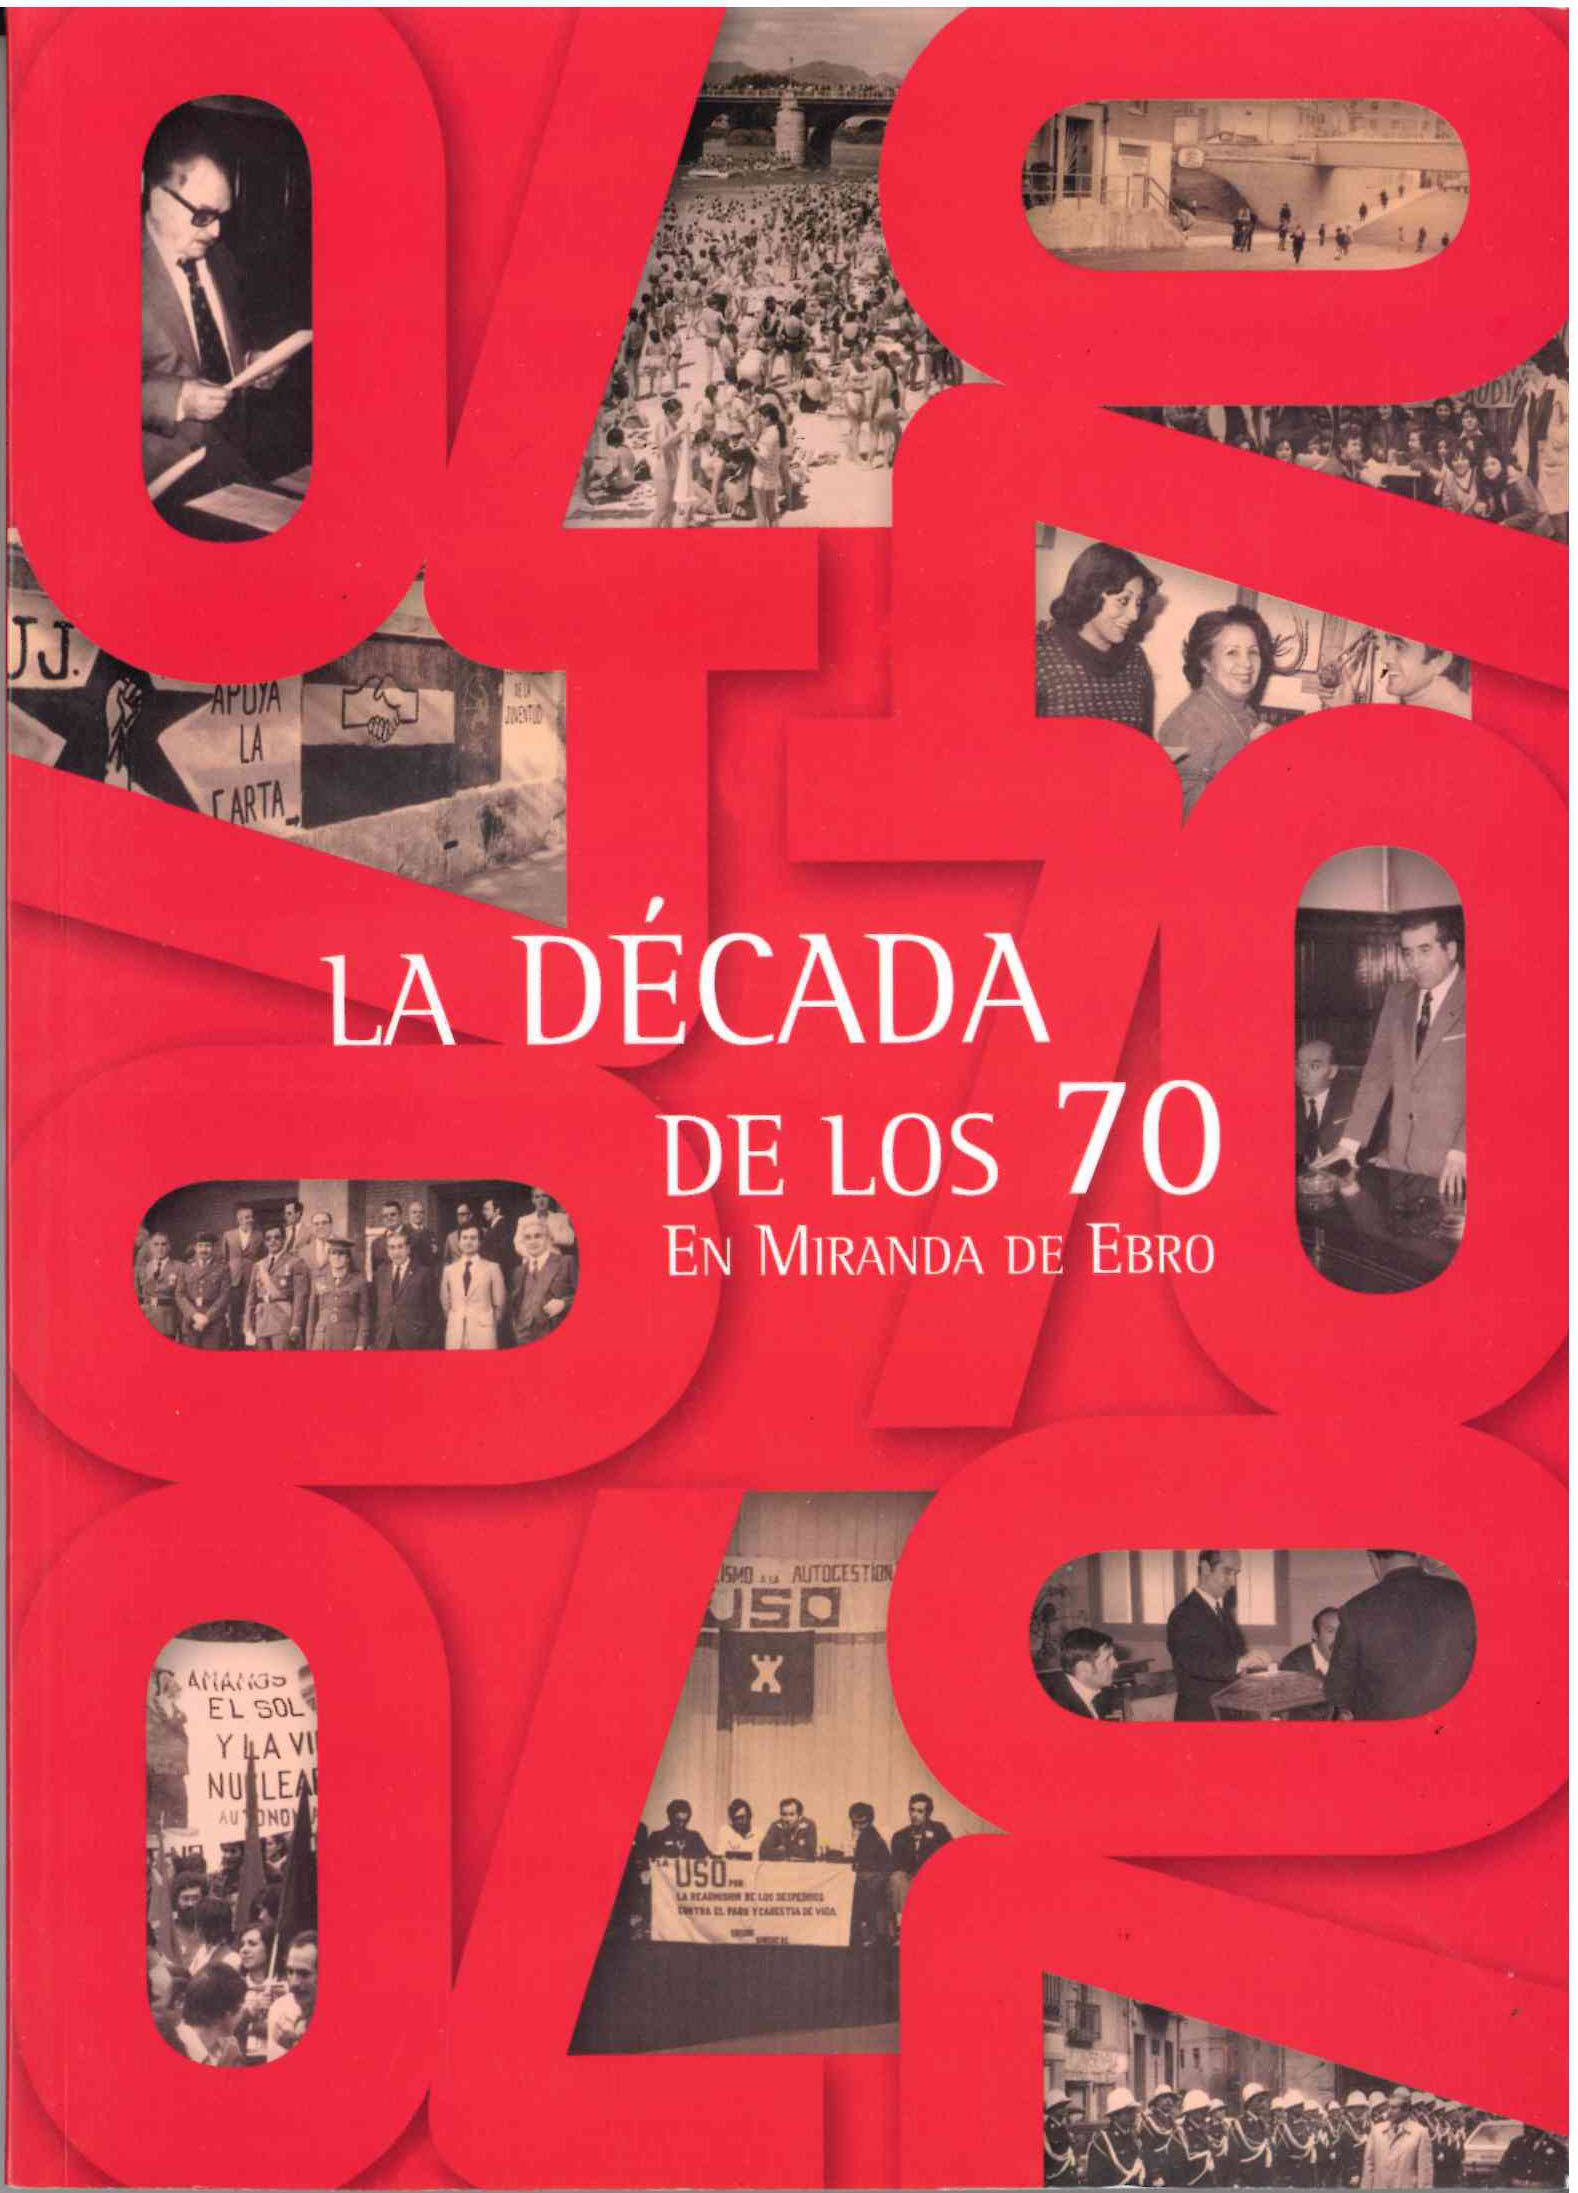 La década de los 70 y memoria fotográfica de la Transición en Miranda de Ebro.  SIN USAR